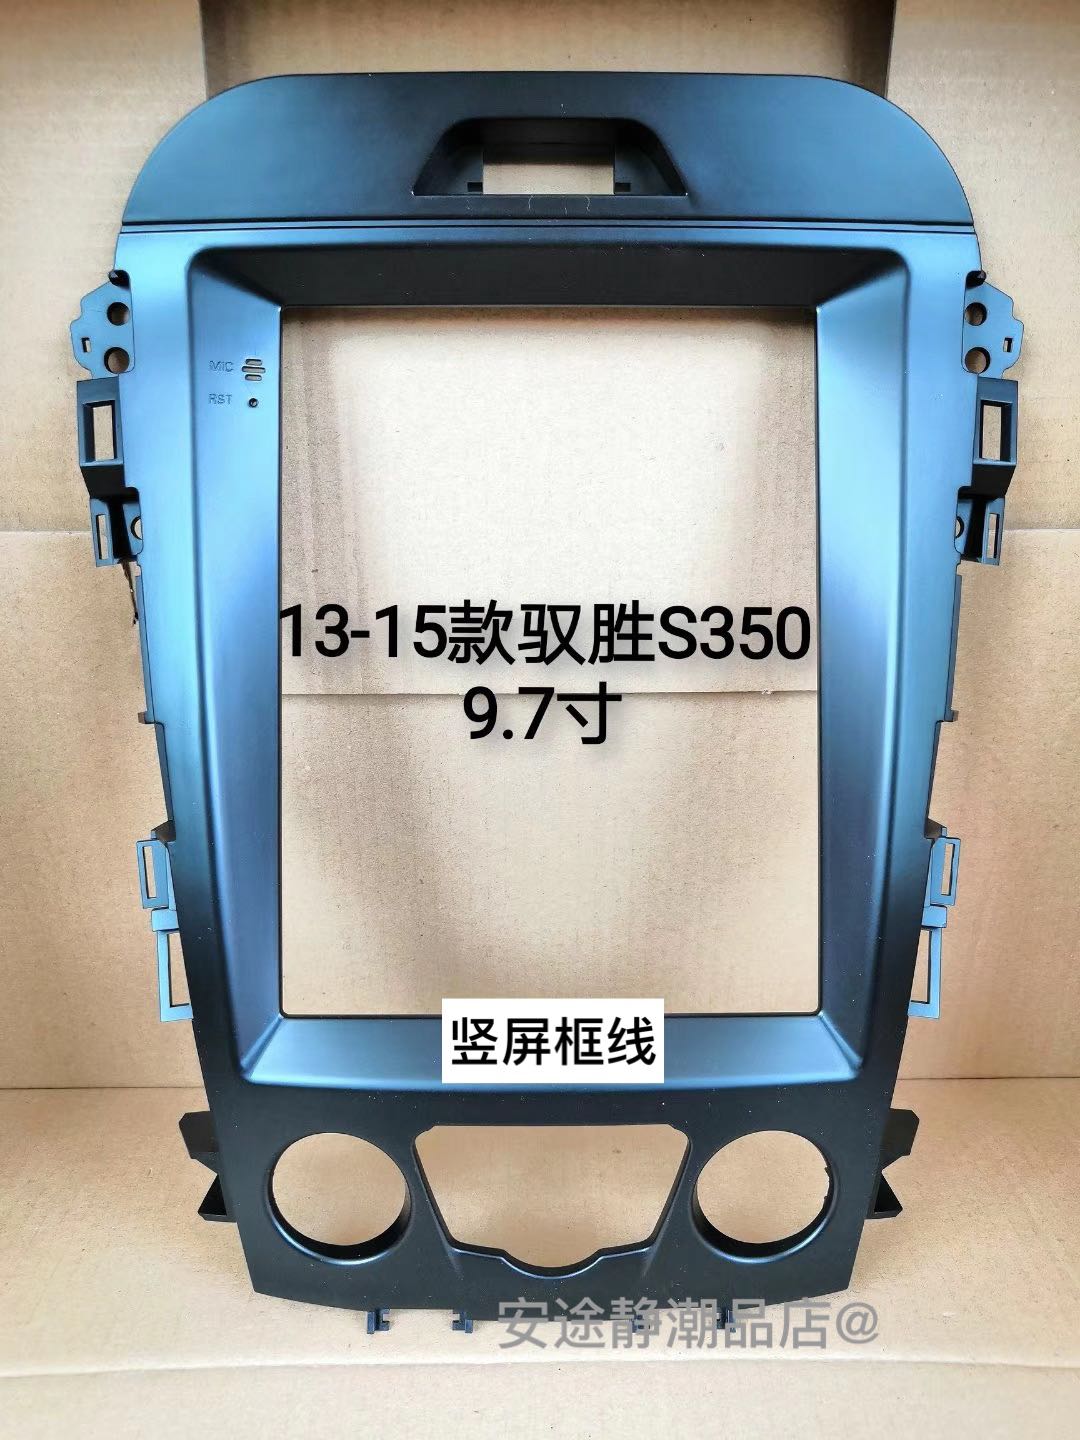 三代百变13-15款驭胜s350 9.7寸竖屏大屏安卓智能导航 面框一体机